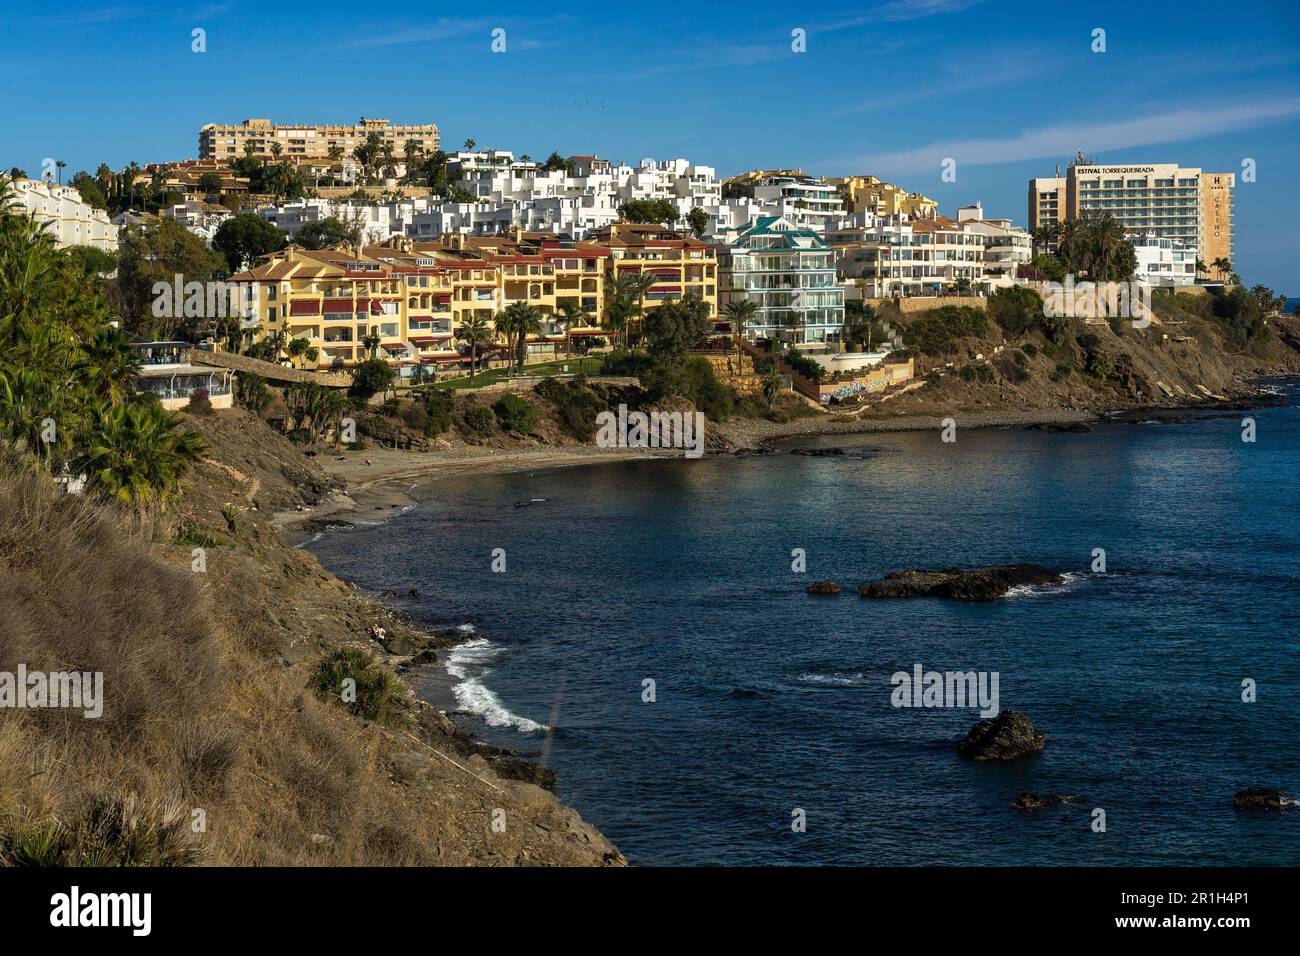 Benalmádena, Espagne - Nov 26 2022 : zone de vacances sur la côte de Benalmádena, Espagne avec des maisons colorées et de l'eau bleue profonde Banque D'Images